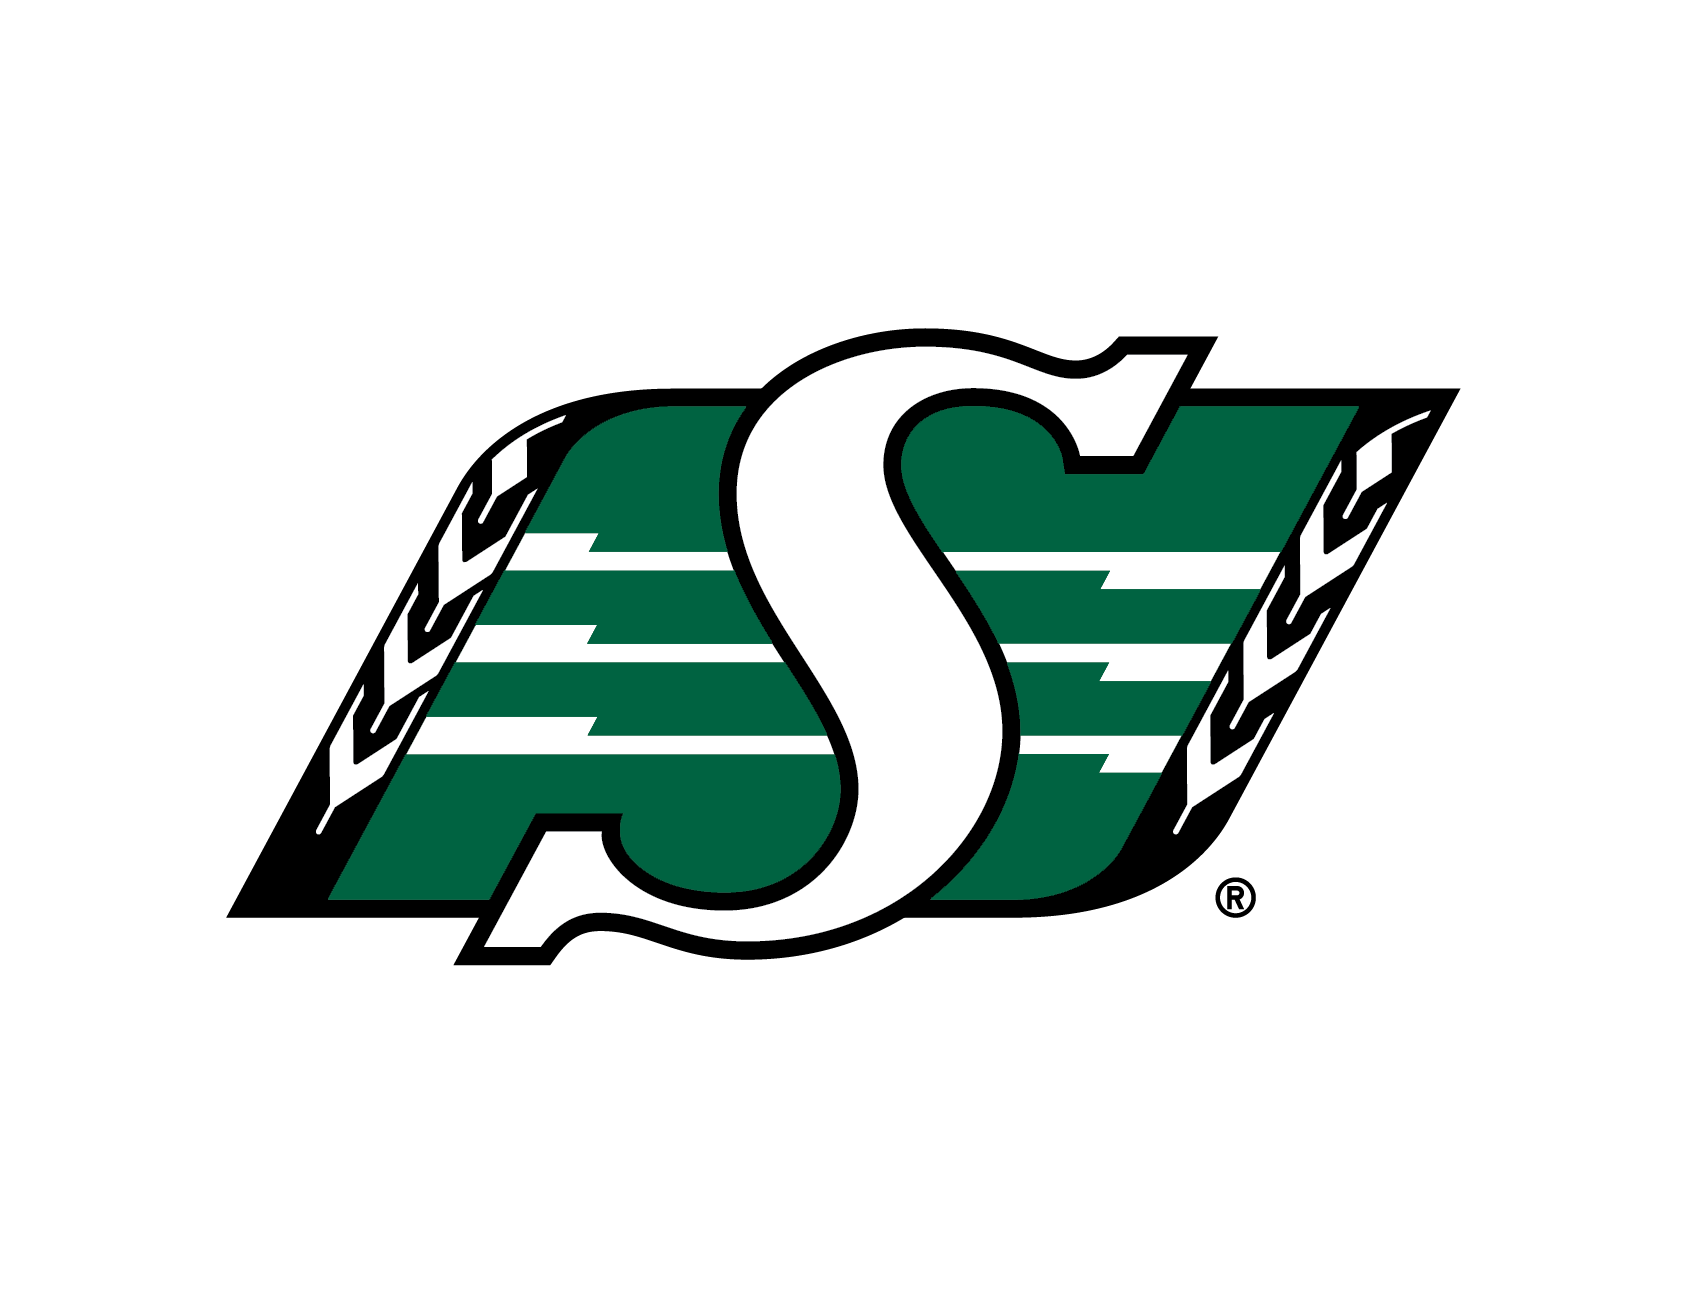 Rider logo